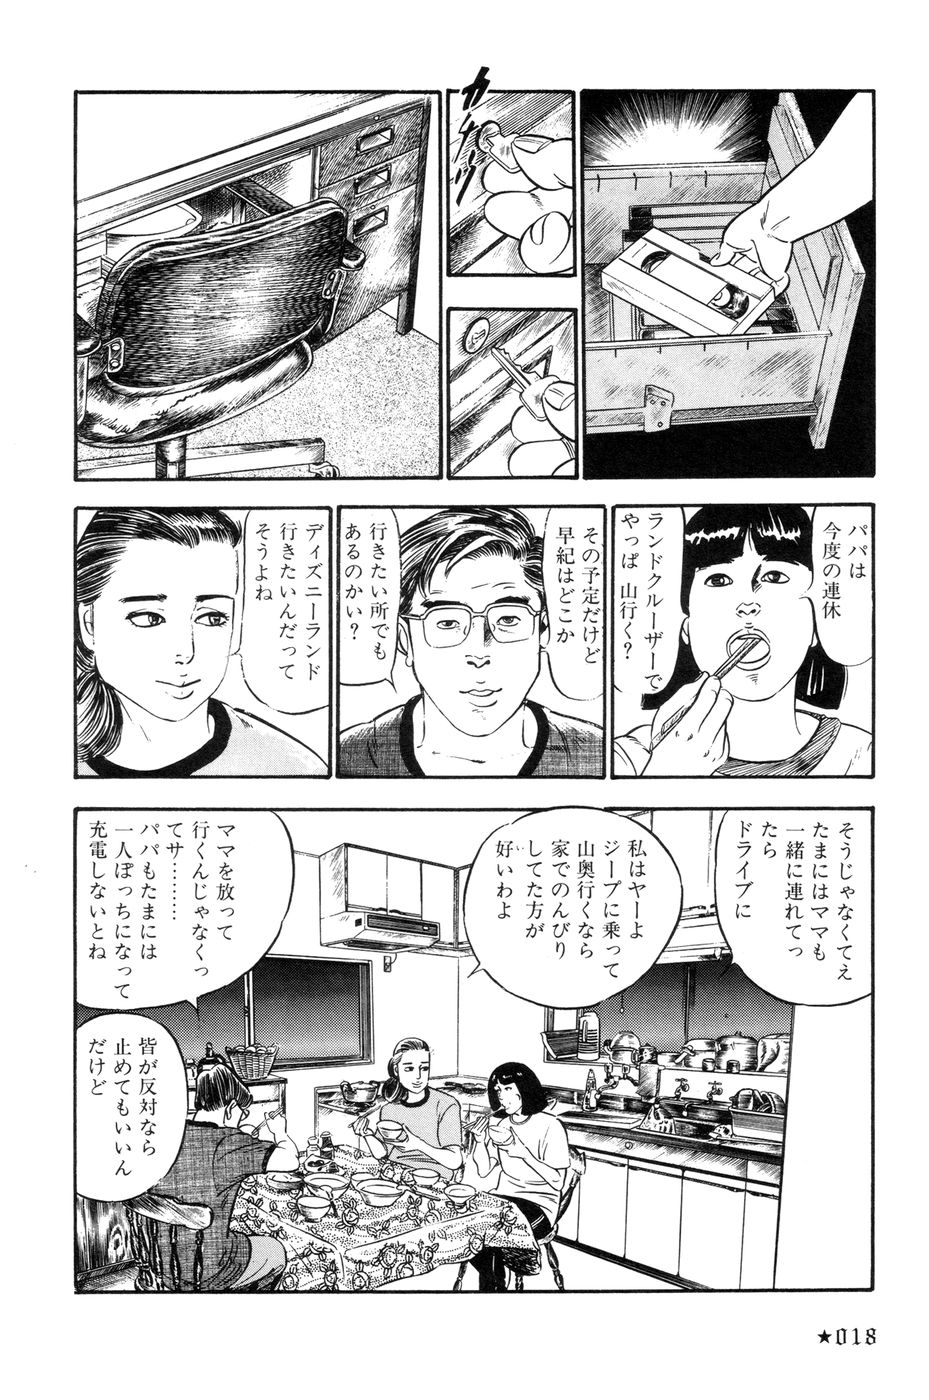 [Takashi Ishii] Maraque page 21 full